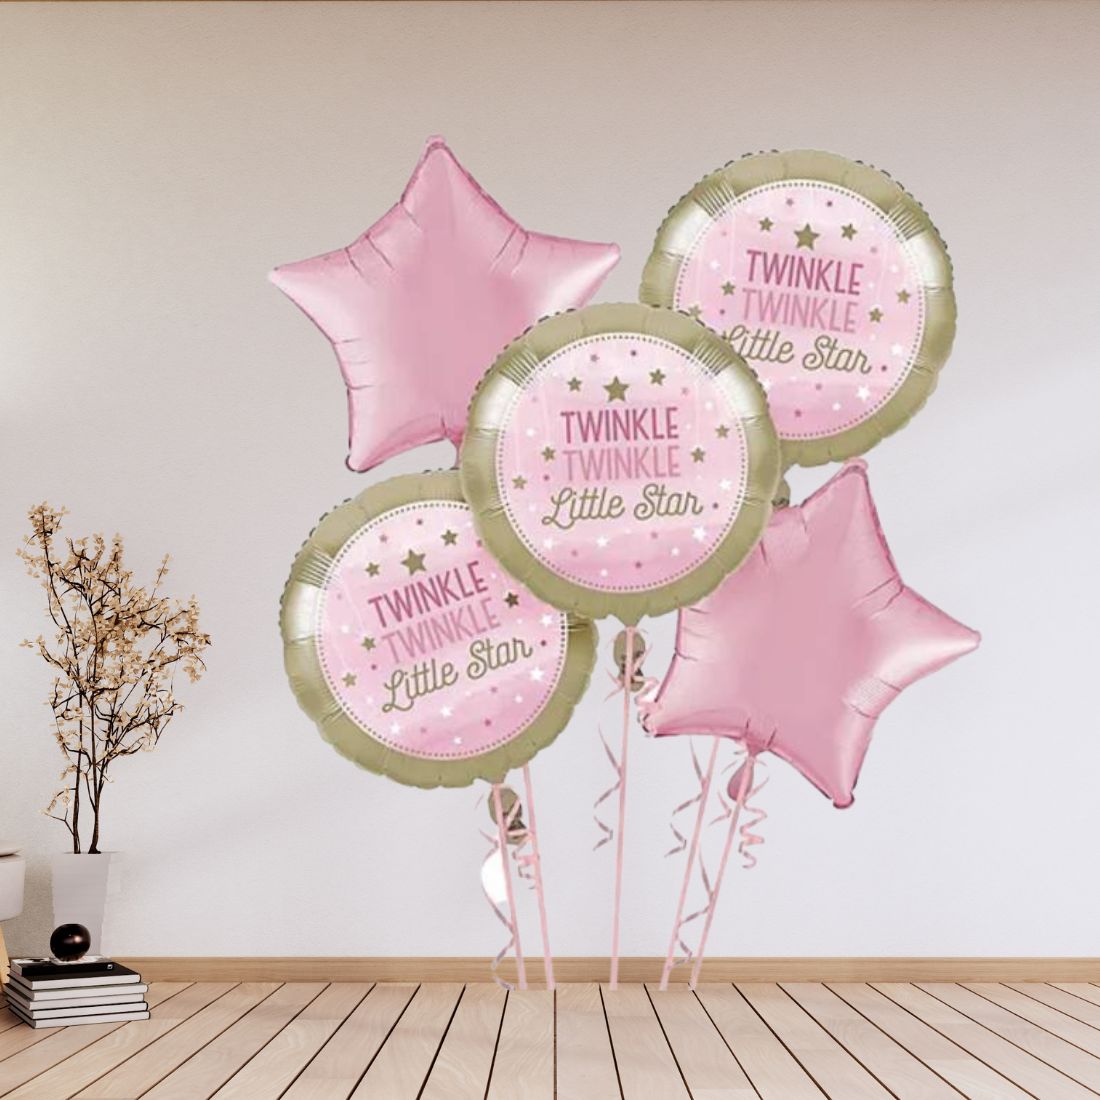 Twinkle Twinkle little Star Foil Balloon Decorations Theme